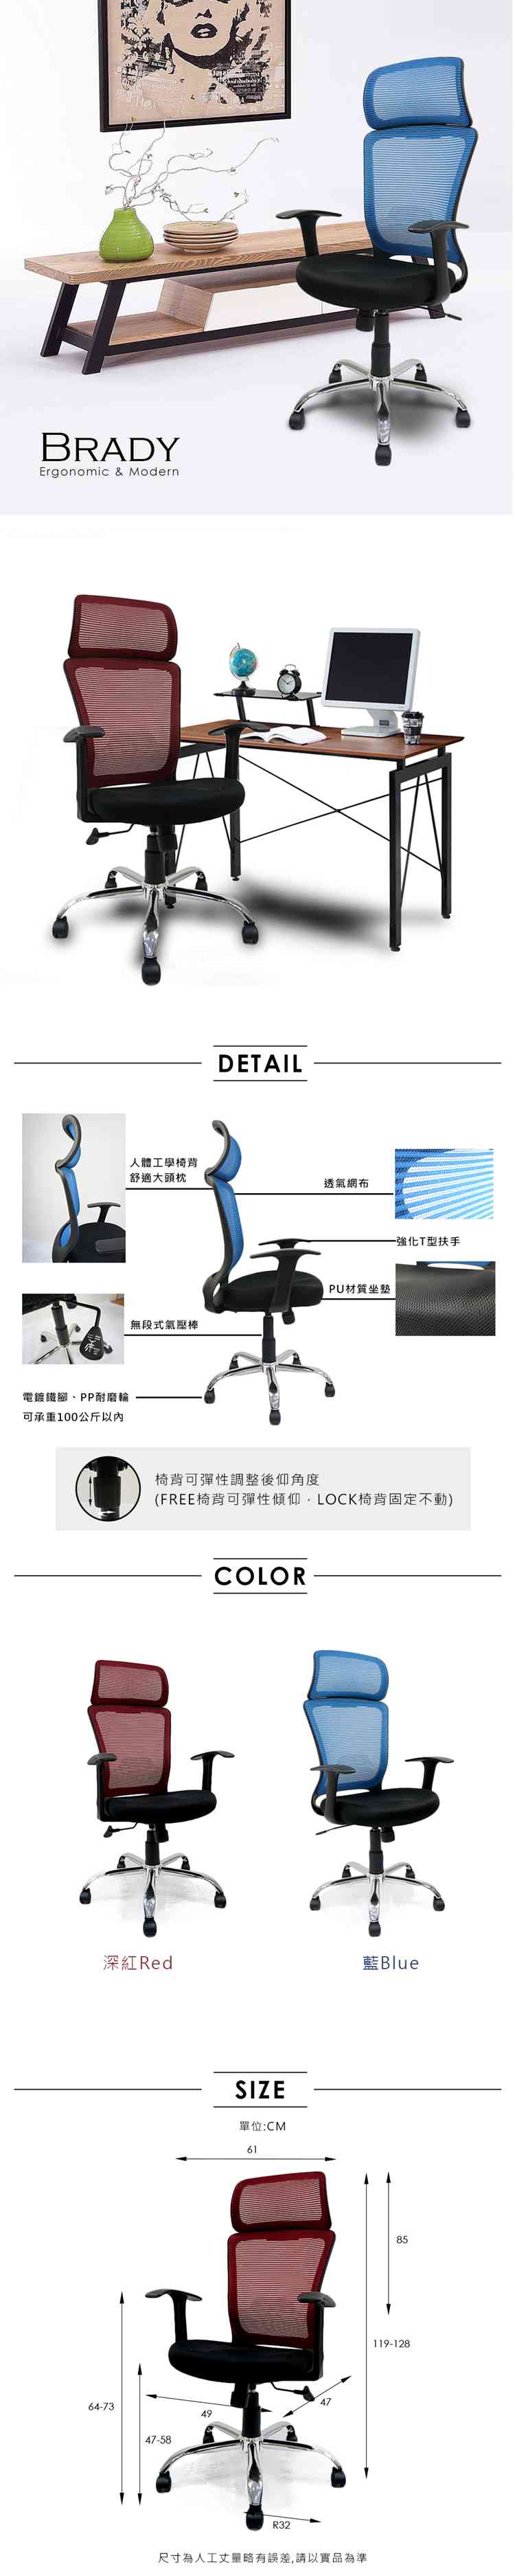 辦公椅/電腦椅 Brady透氣網布頭靠高背辦公椅電腦椅【obis】